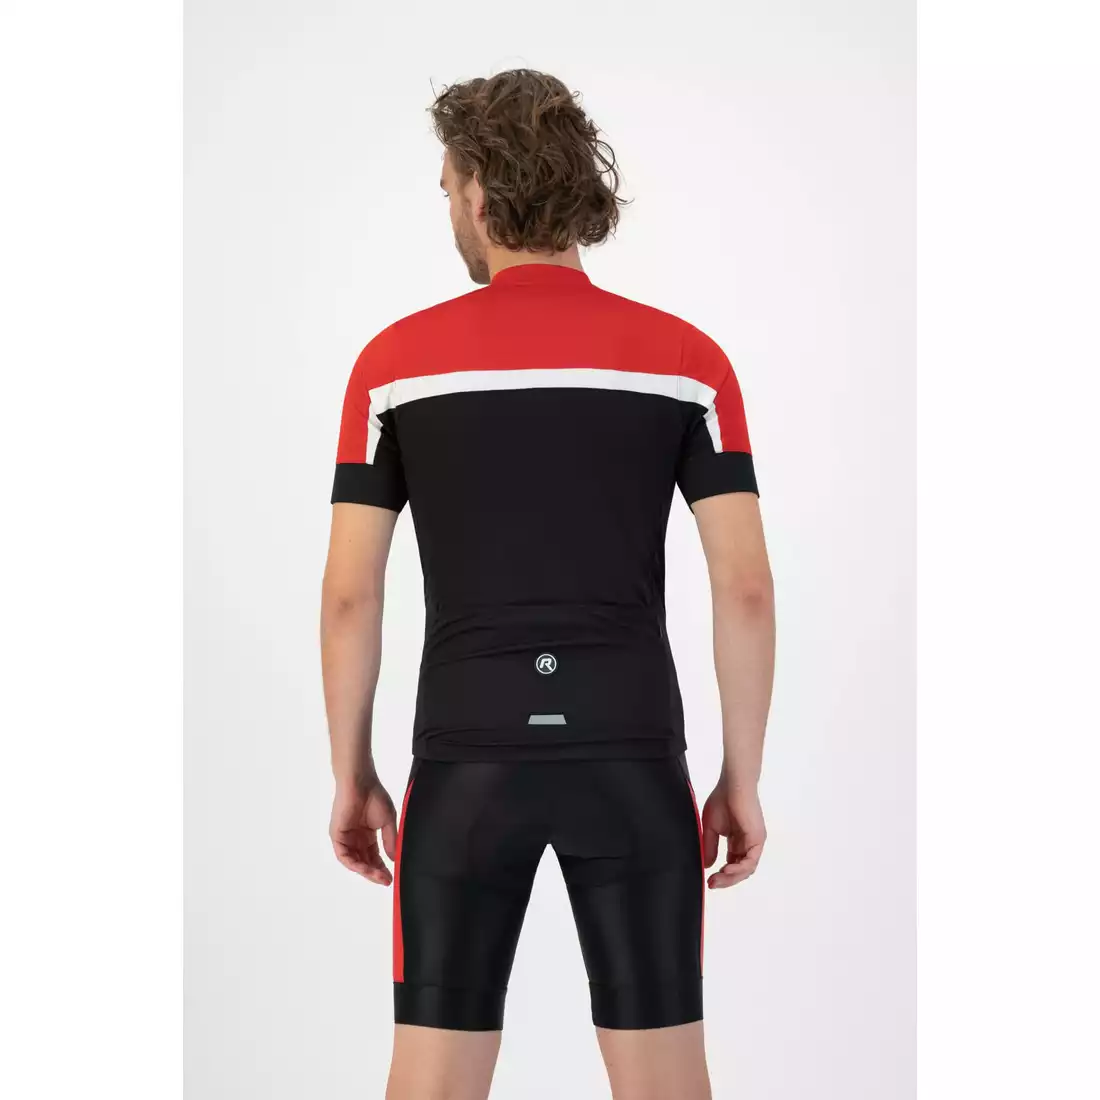 Rogelli COURSE męska koszulka rowerowa, czarno-czerwona 